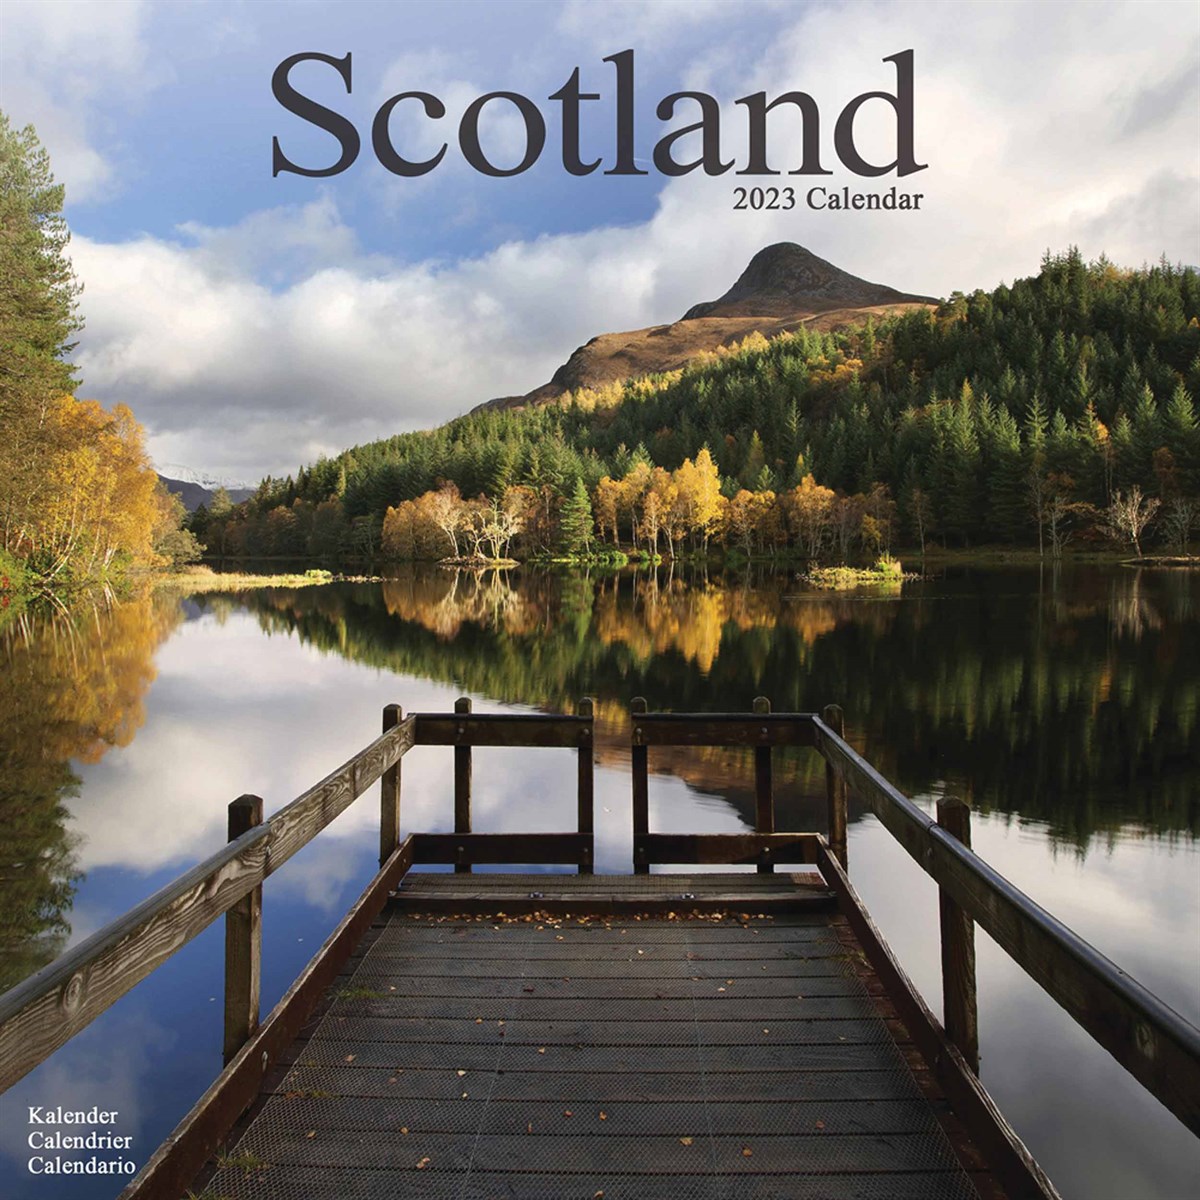 Scotland 2023 Calendars